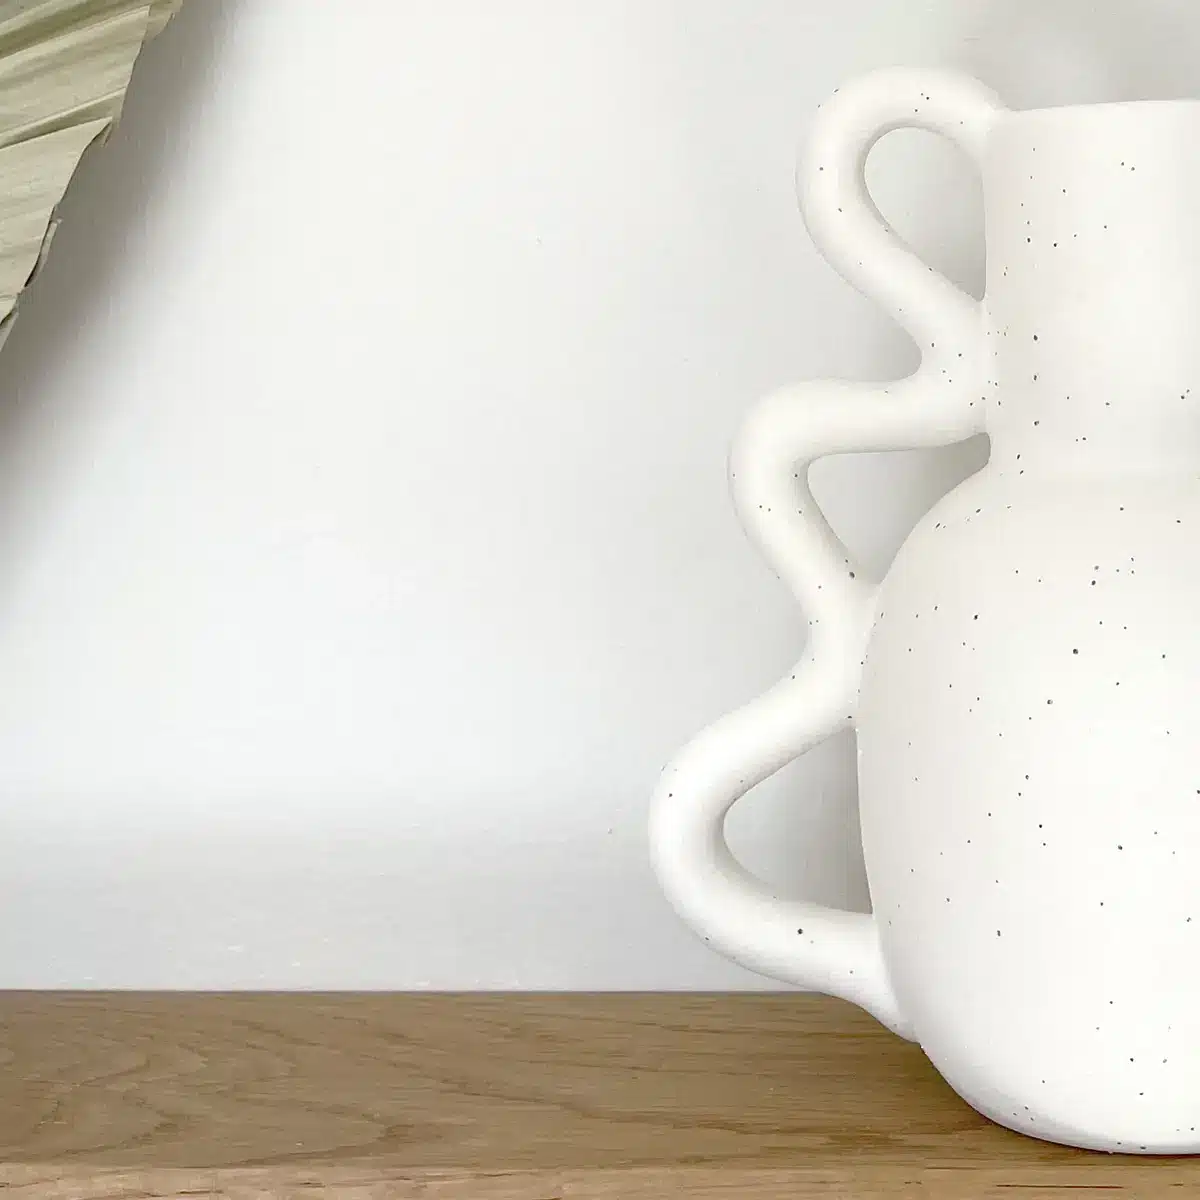 Vase en céramique avec une poignée ondulée